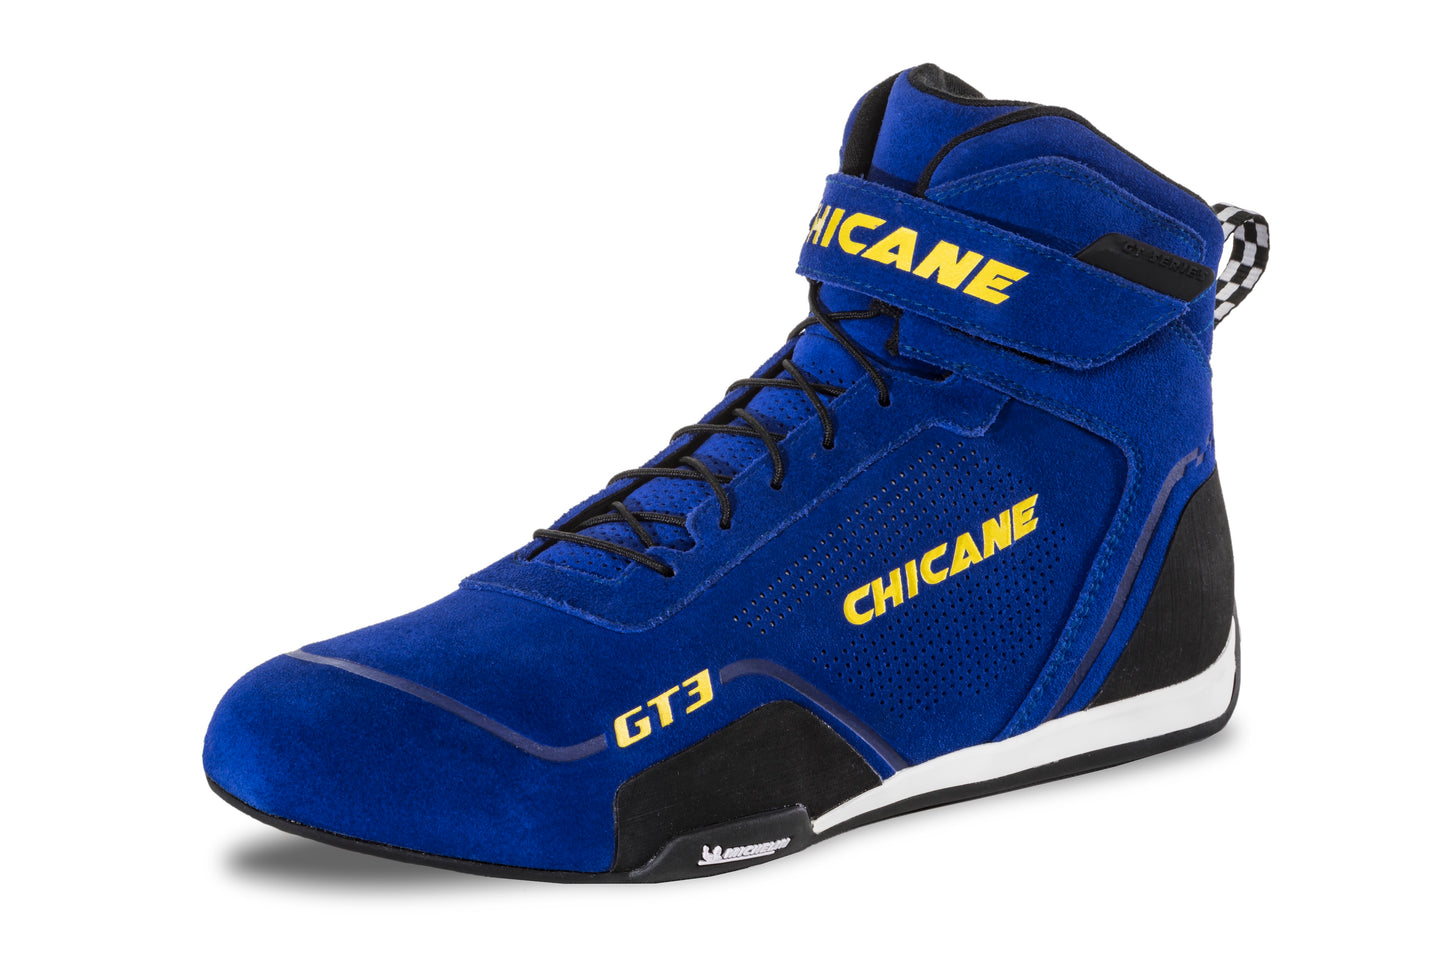 Chicane Men's GT3 - Blue